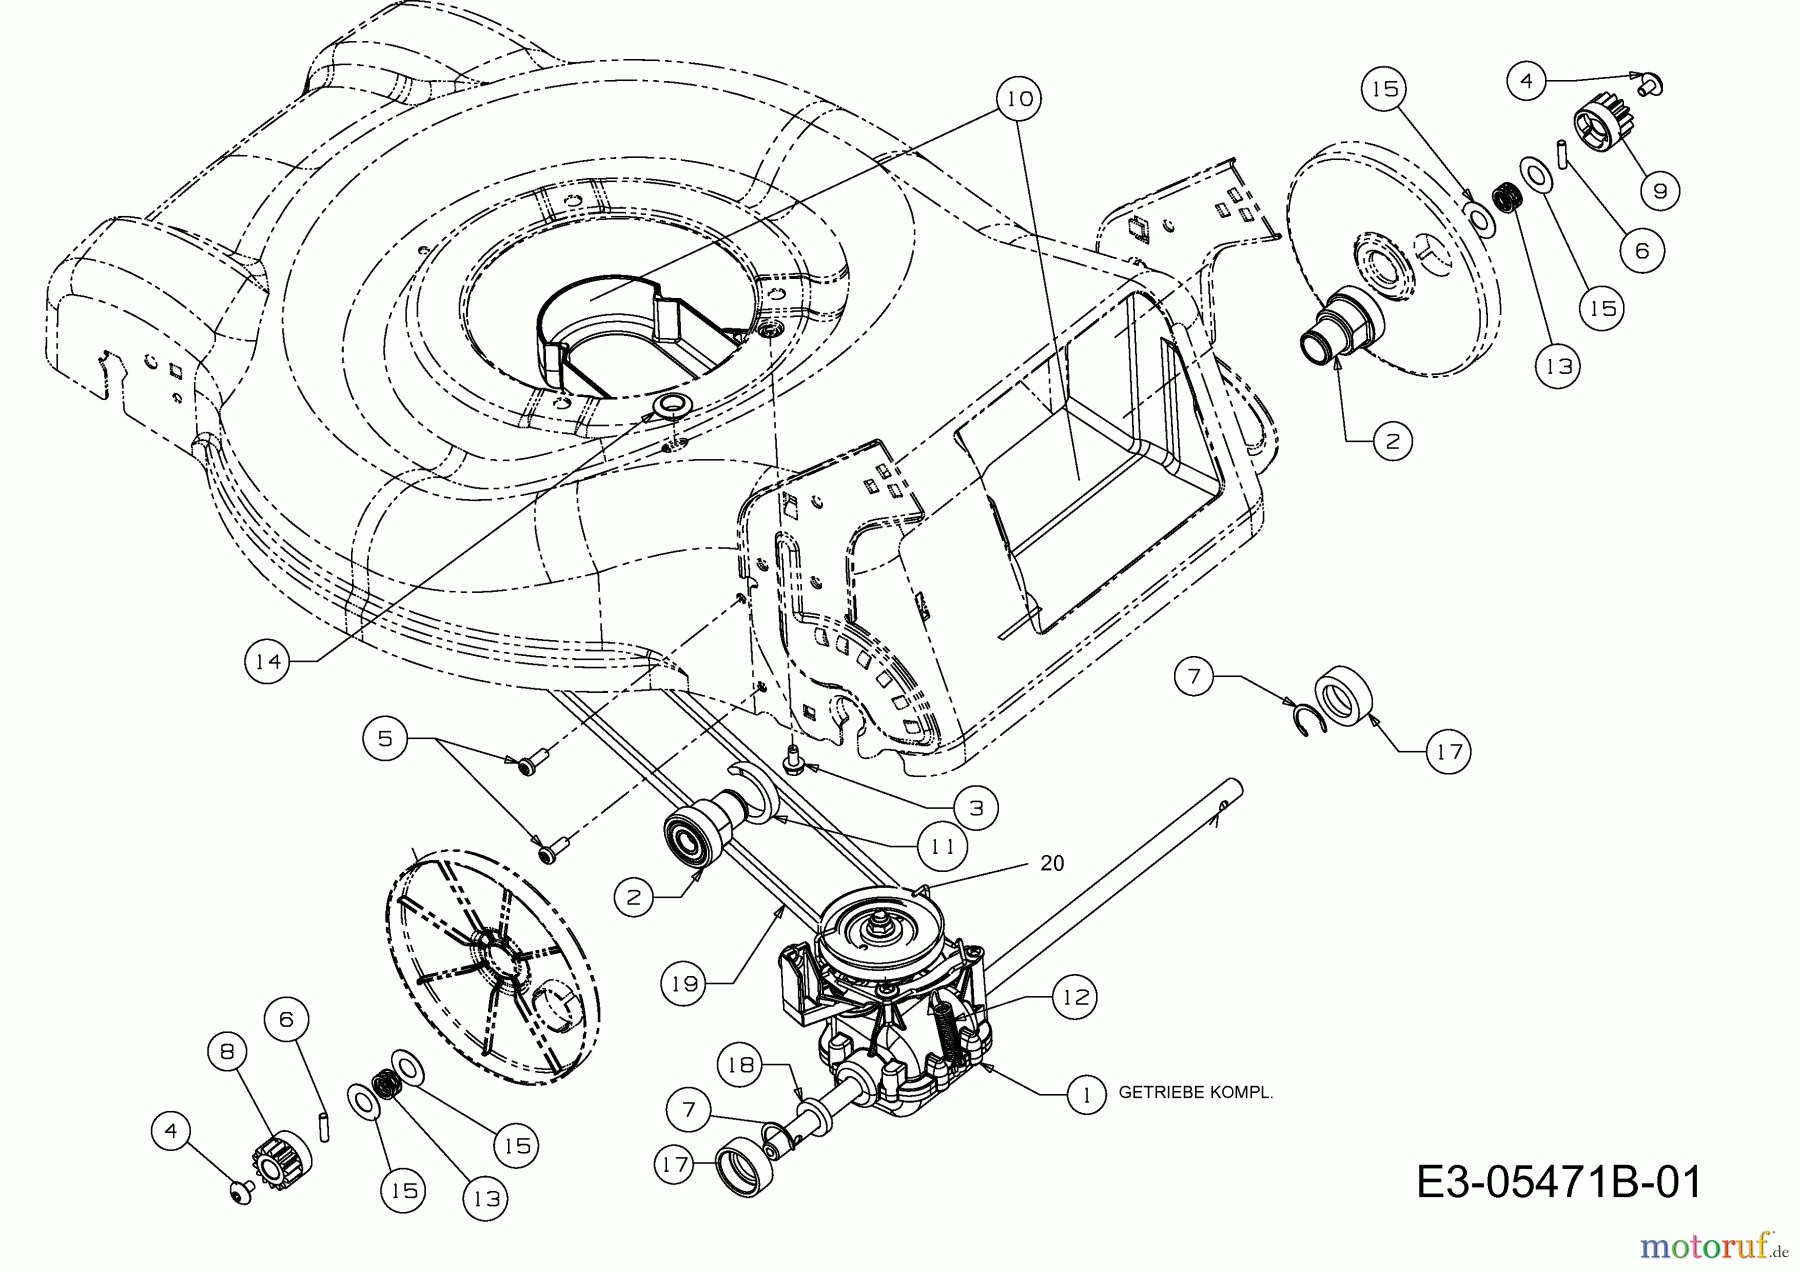  Plantiflor Motormäher mit Antrieb BMR 46 12E-J5JS601  (2013) Getriebe, Keilriemen